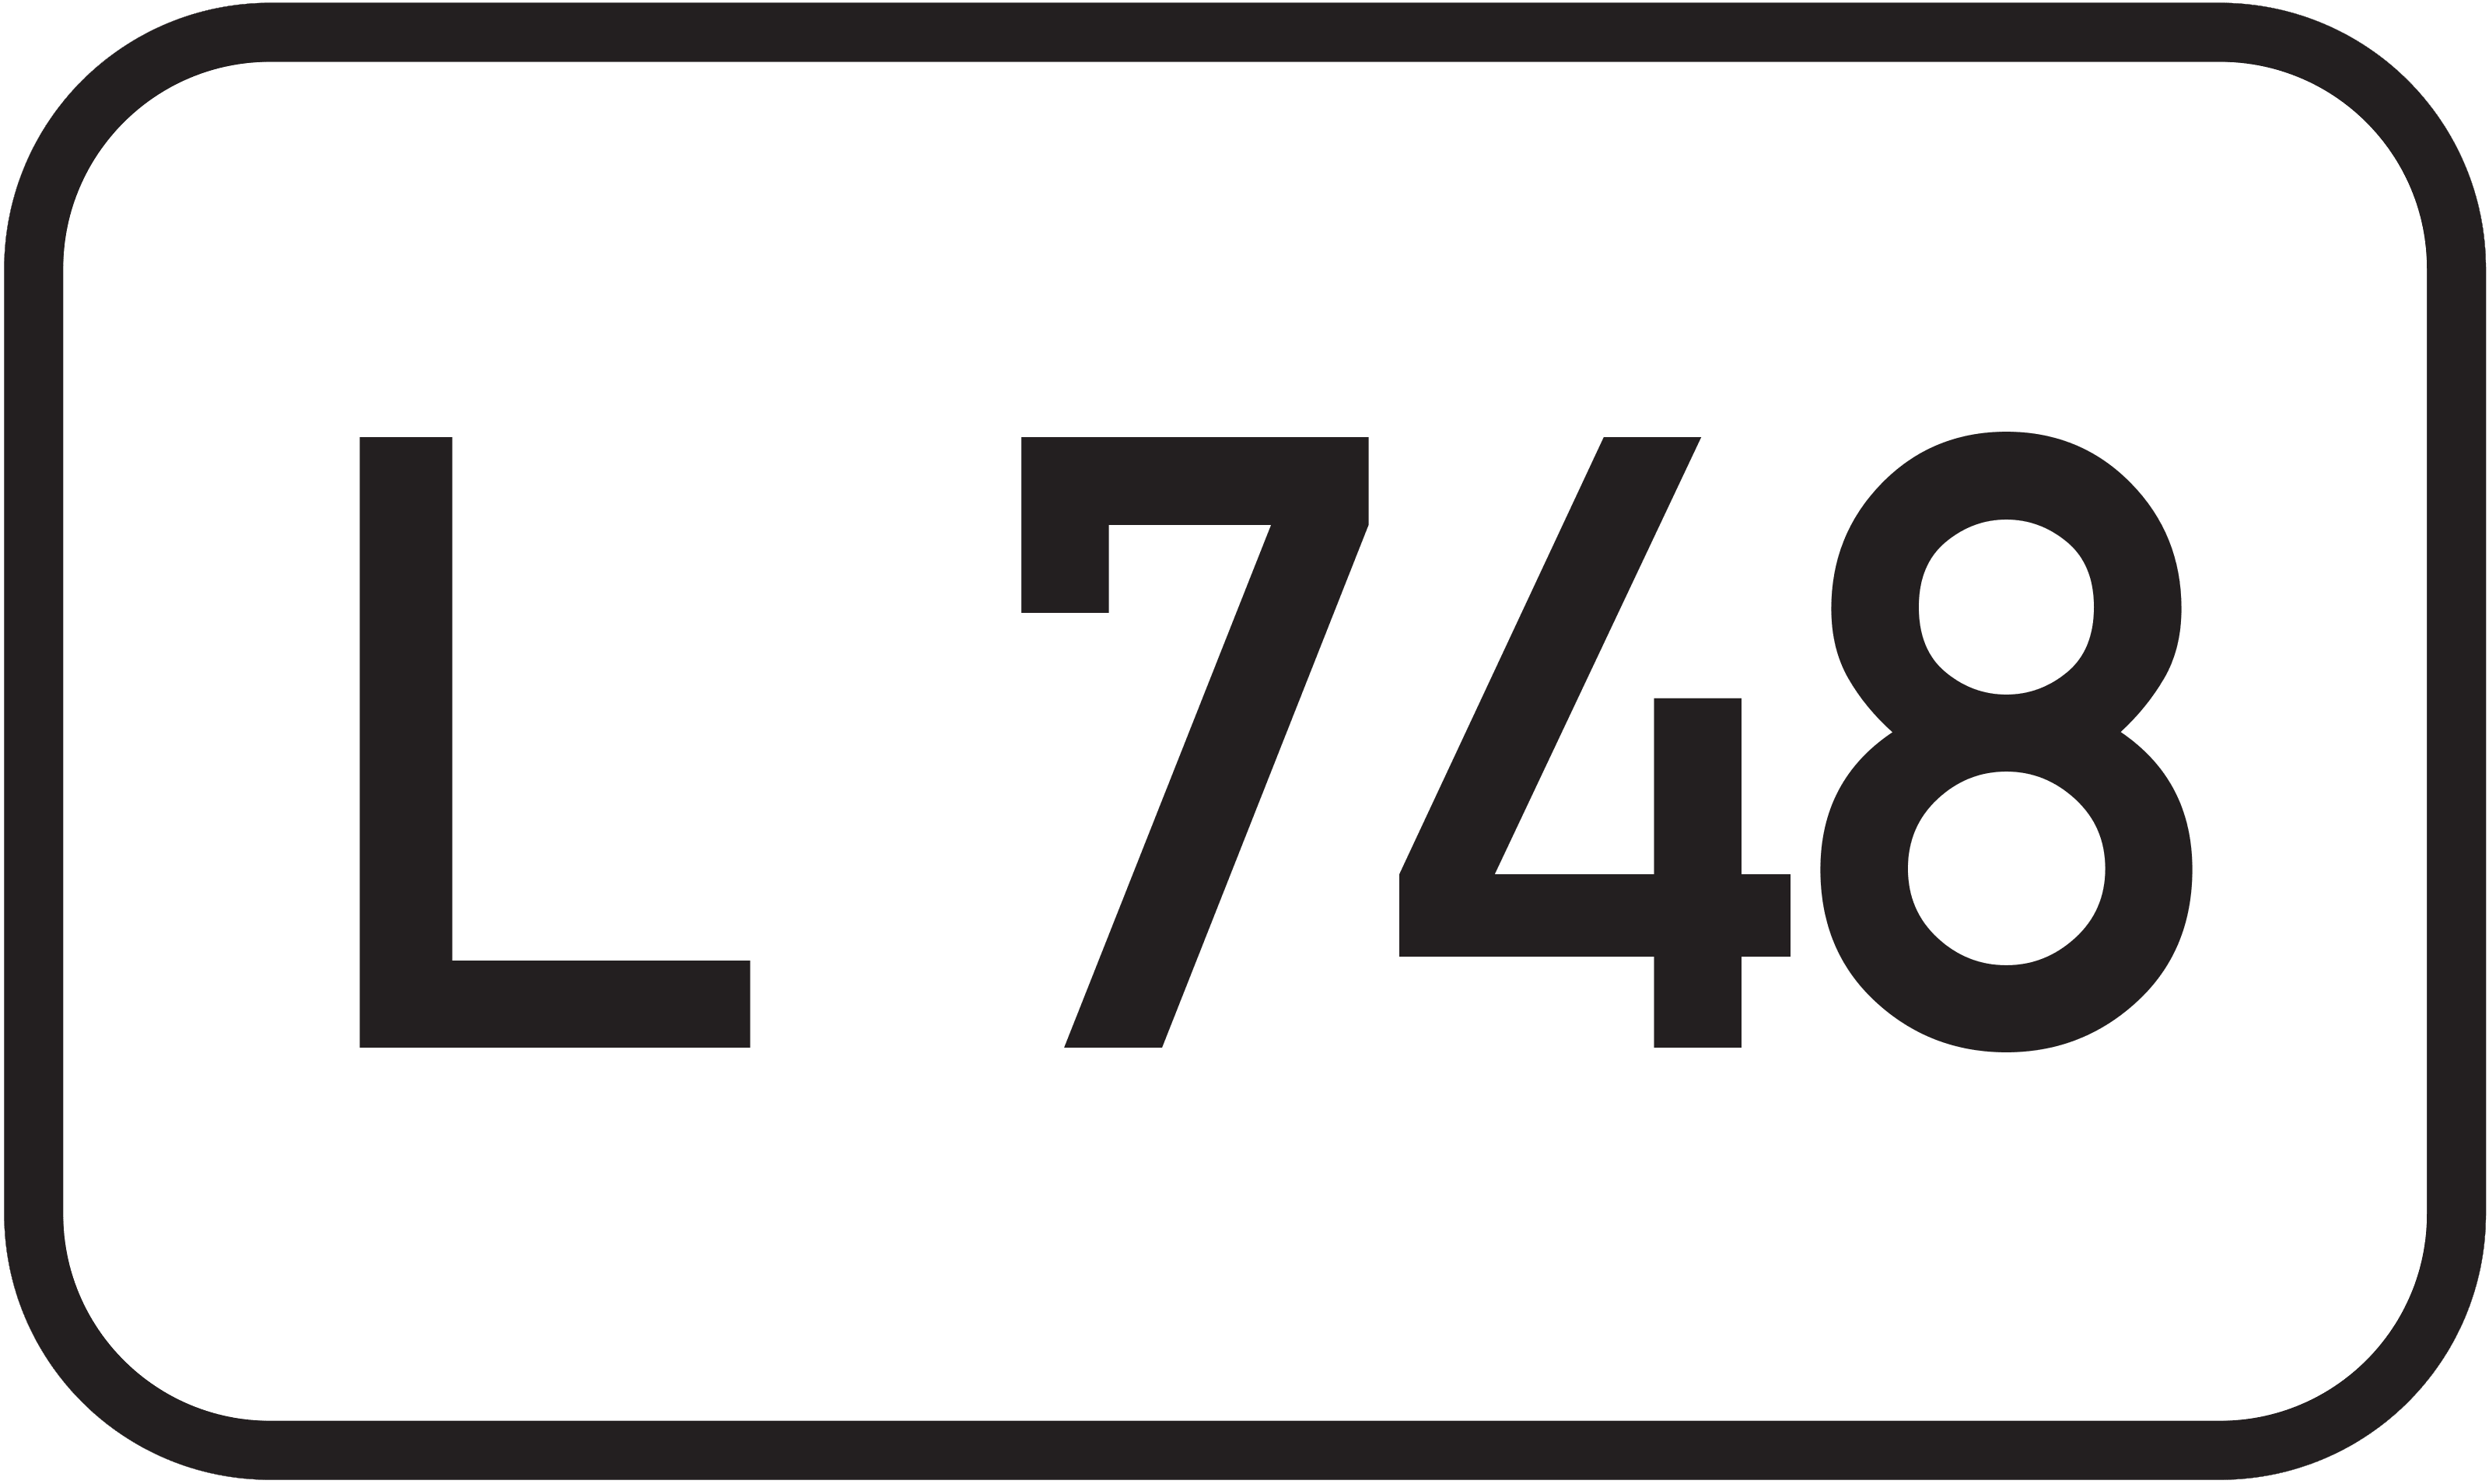 Landesstraße L 748